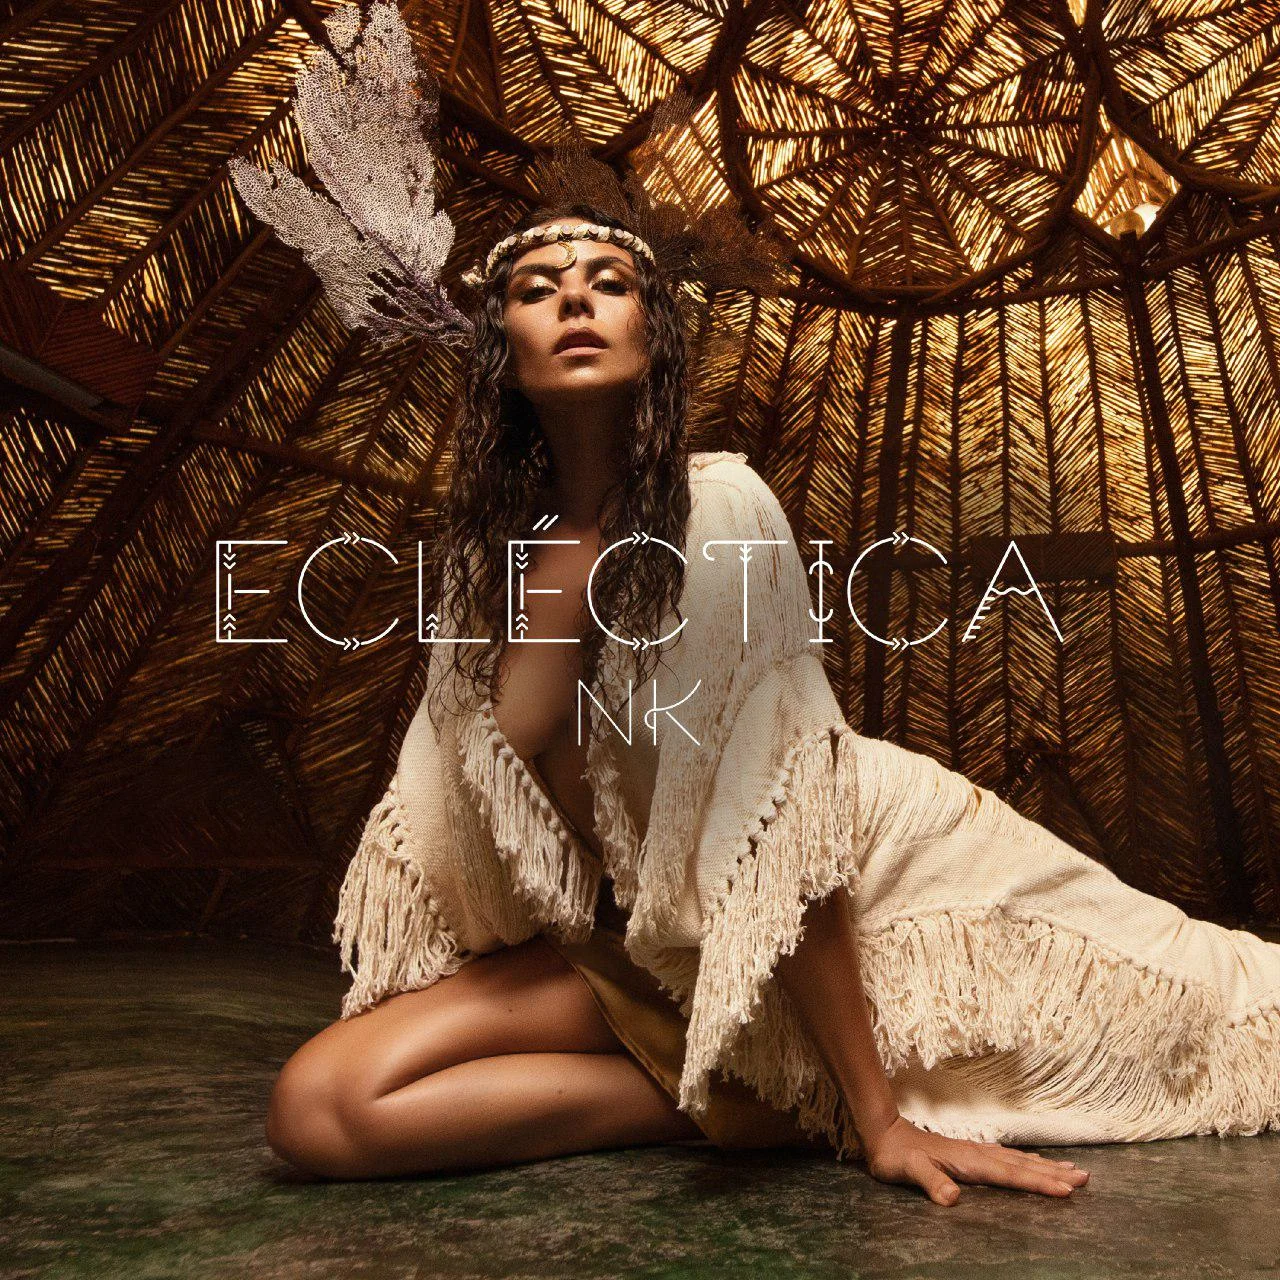 Настя Каменских выпустила испаноязычный альбом 'Ecléctica', где просто хит за хитом - фото 491470